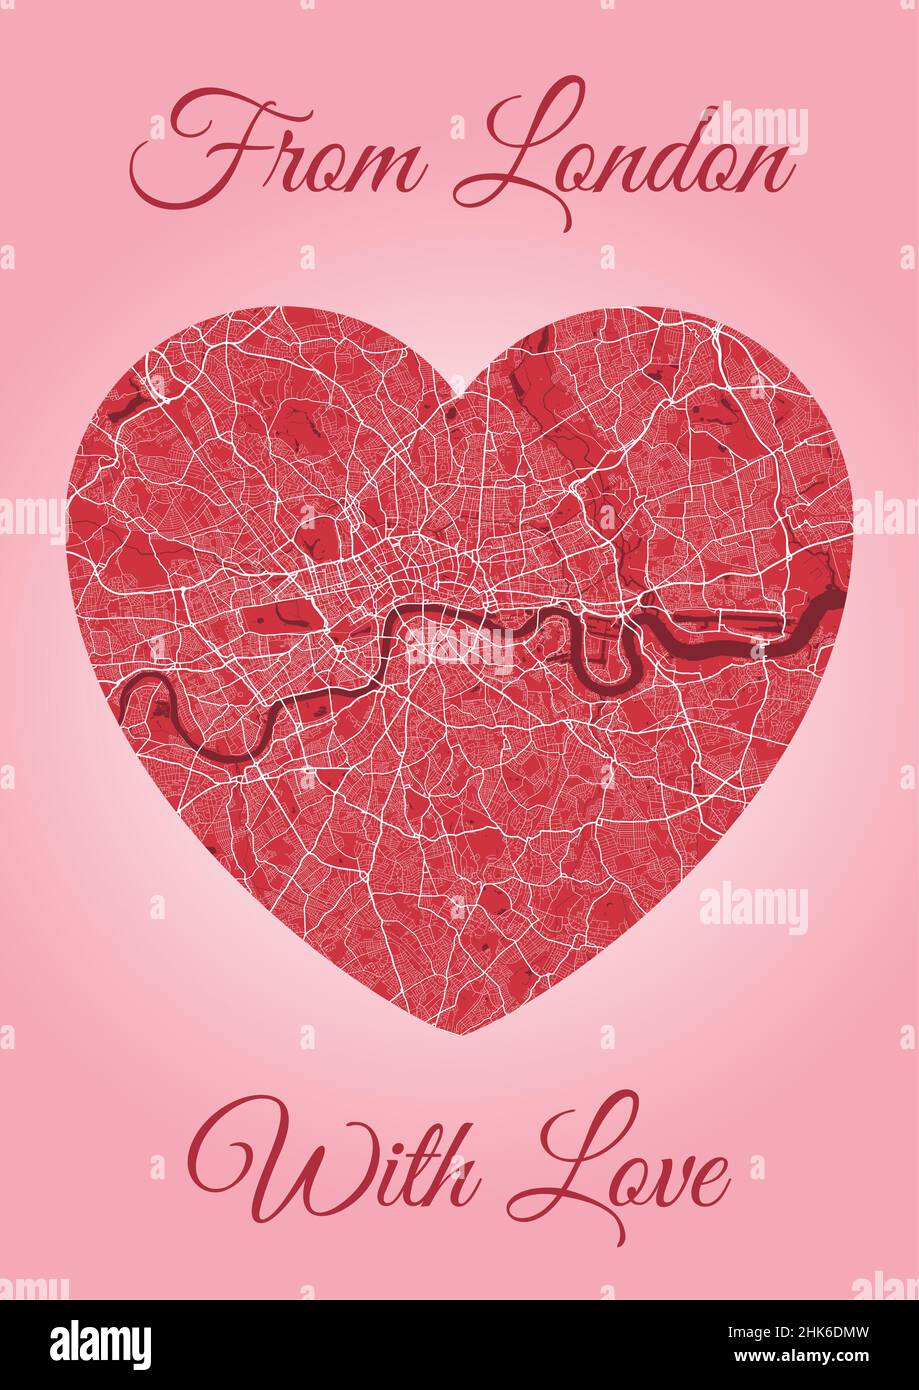 De Londres avec carte d'amour, carte de la ville en forme de coeur.Illustration verticale A4 de vecteur de couleur rose et rouge.J'adore le paysage urbain. Illustration de Vecteur